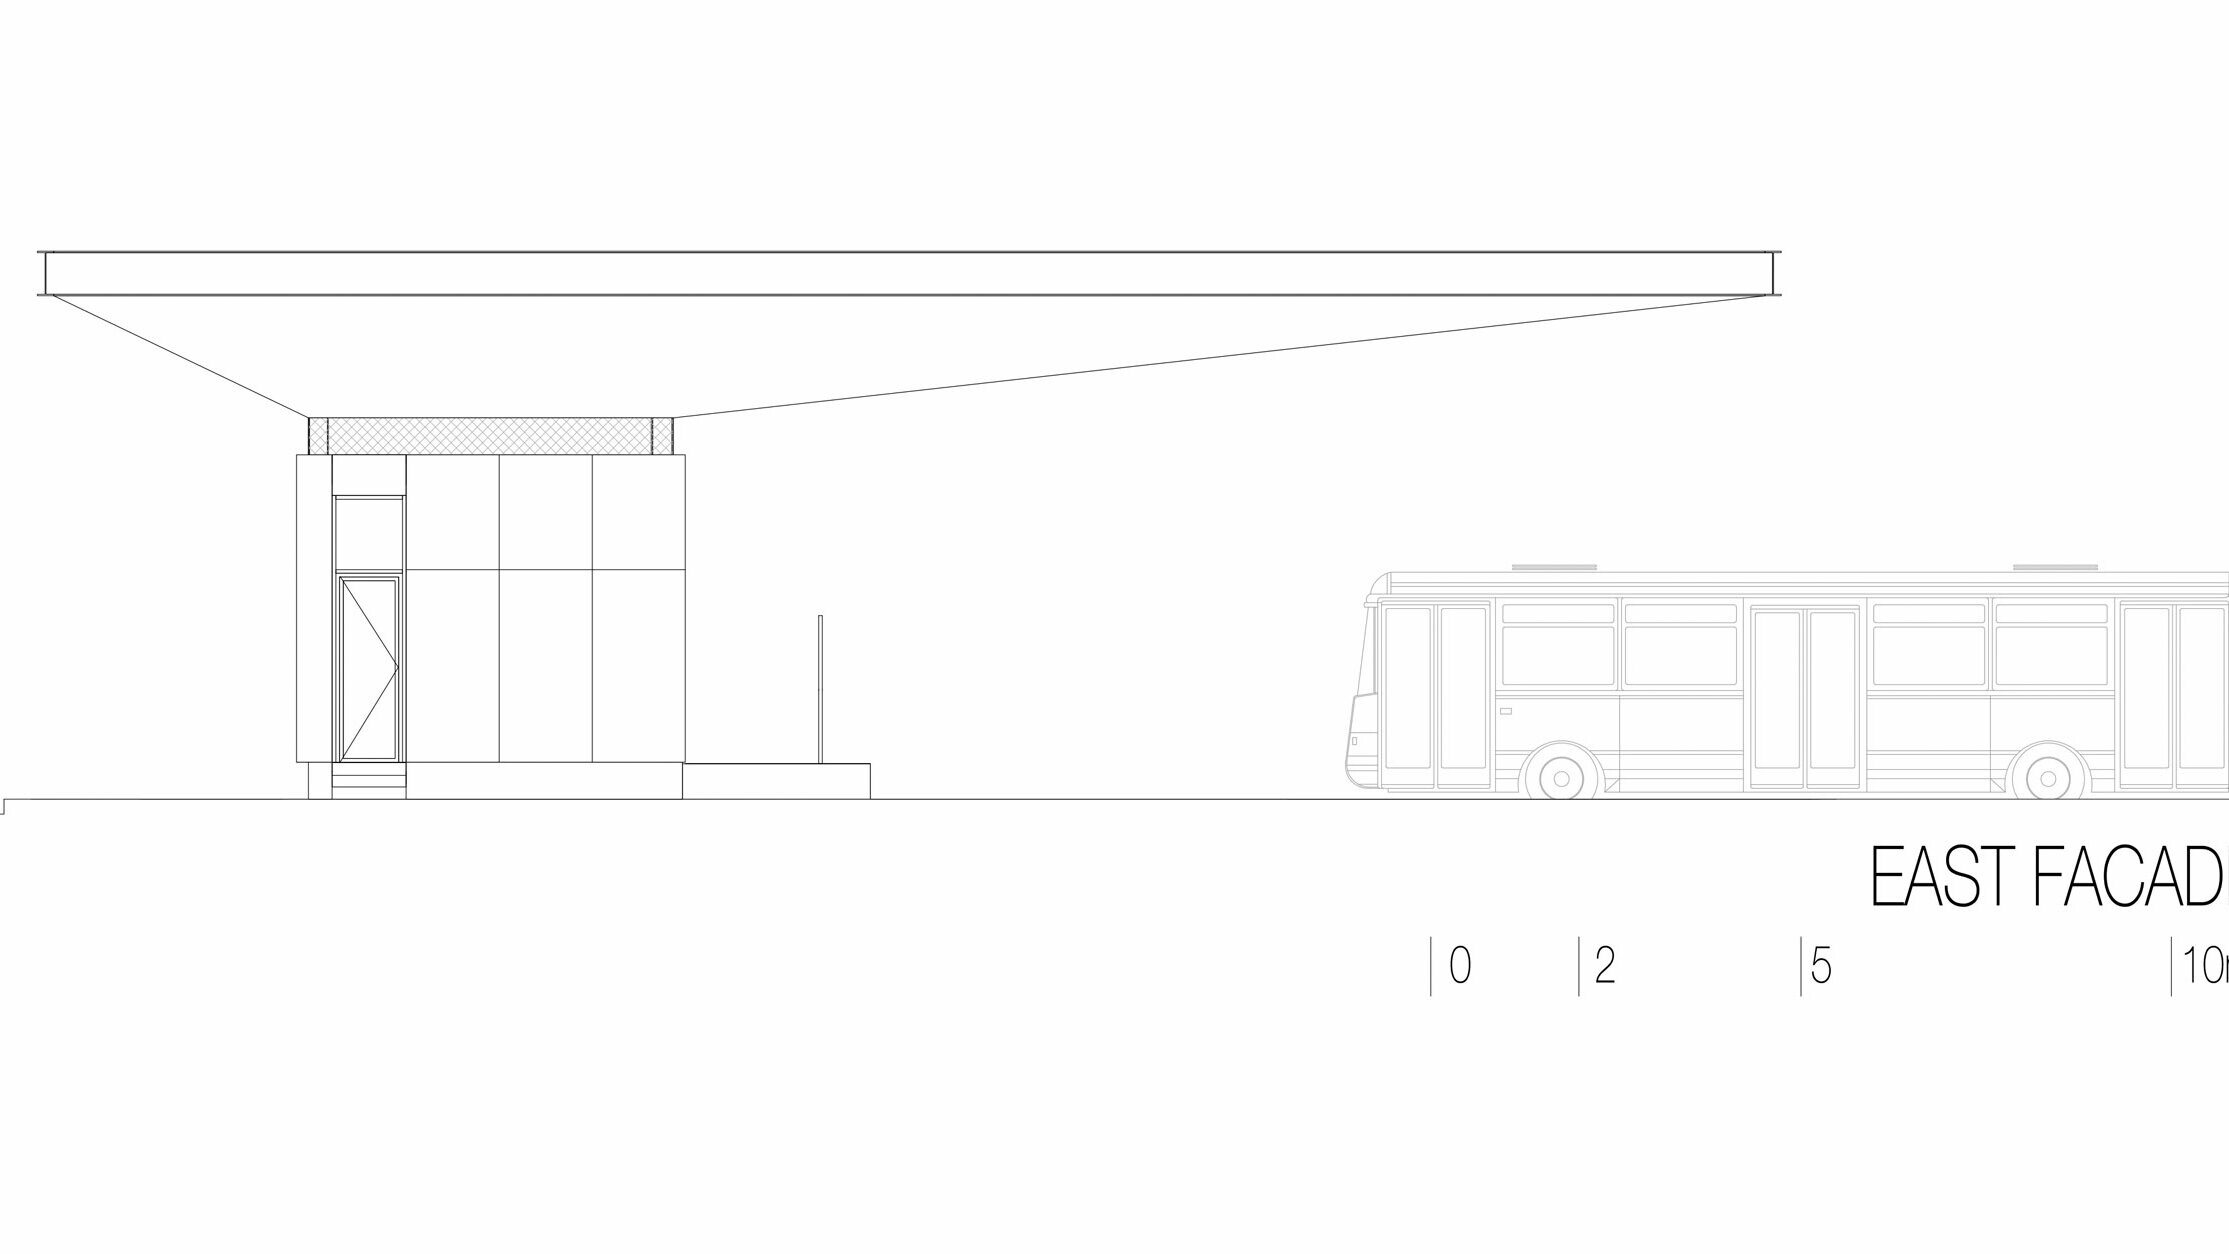 Kresba zobrazuje východný pohľad na autobusovú zastávku "Autobusni Kolodvor Slavonski Brod" v Chorvátsku. Ilustrácia zdôrazňuje štíhlu horizontálnu štruktúru bielej strechy PREFA Prefalz, ktorá sa tiahne po celej dĺžke budovy. Pod strechou sa nachádza obdĺžniková konštrukcia s jasnými líniami a veľkými sklenenými plochami. Na pravej strane kresby je vidieť autobus, ktorý zdôrazňuje proporcie zastávky vo vzťahu k vozidlu. Východný pohľad zdôrazňuje modernú a funkčnú architektúru autobusovej zastávky, ktorá vďaka použitiu skla a hliníka vytvára svetlú a príjemnú atmosféru.